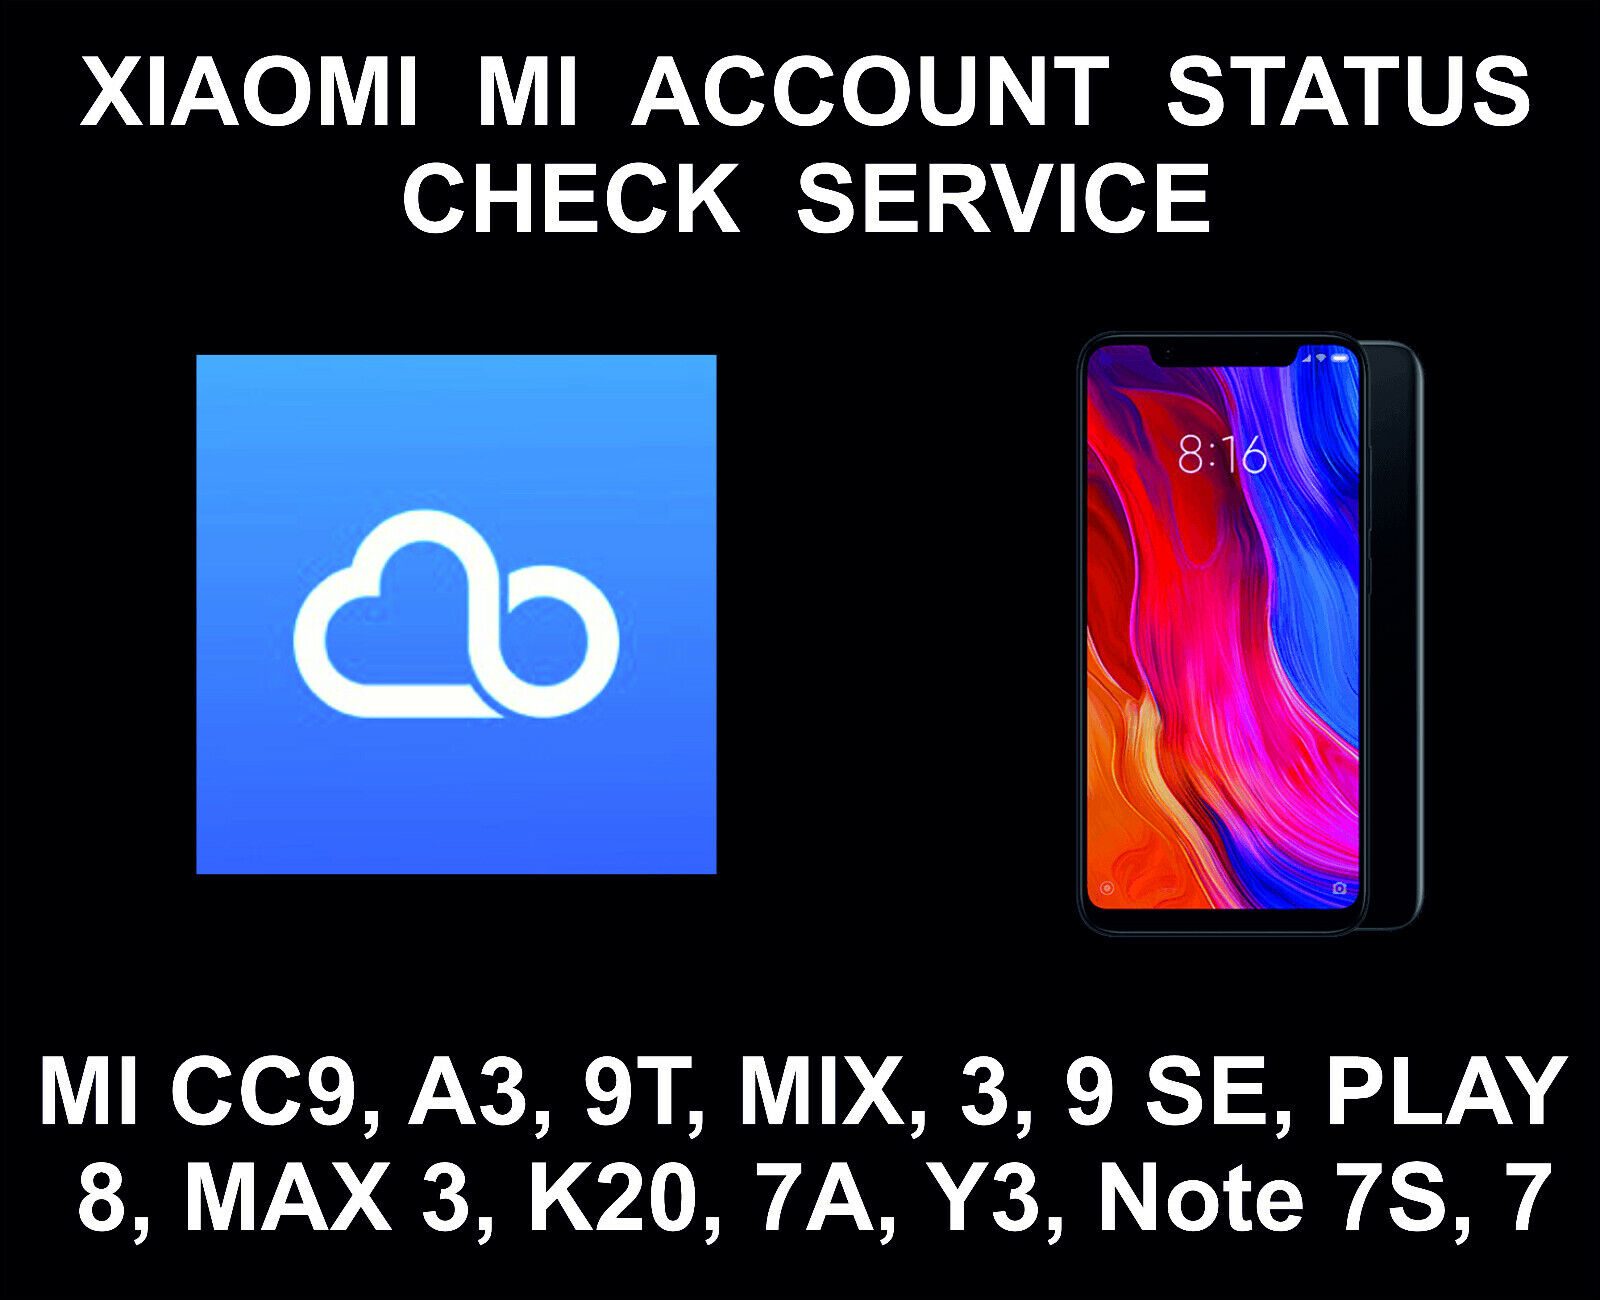 Xiaomi Mi Account Status Check Service, On/off, Mi Cc9, A3, 9t, Mix 3, 9 Se, Pla